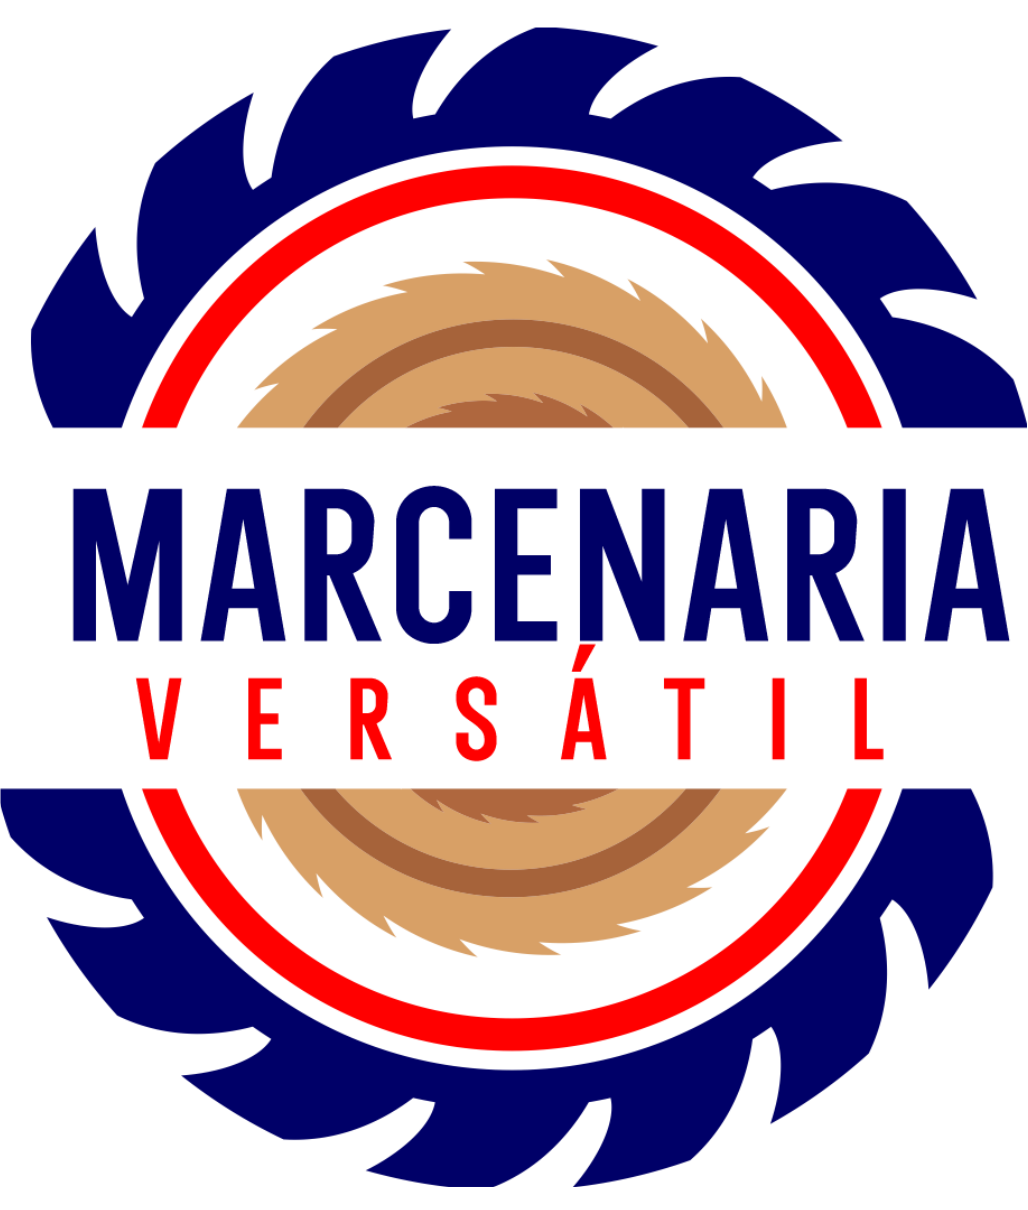 Marcenaria Versátil